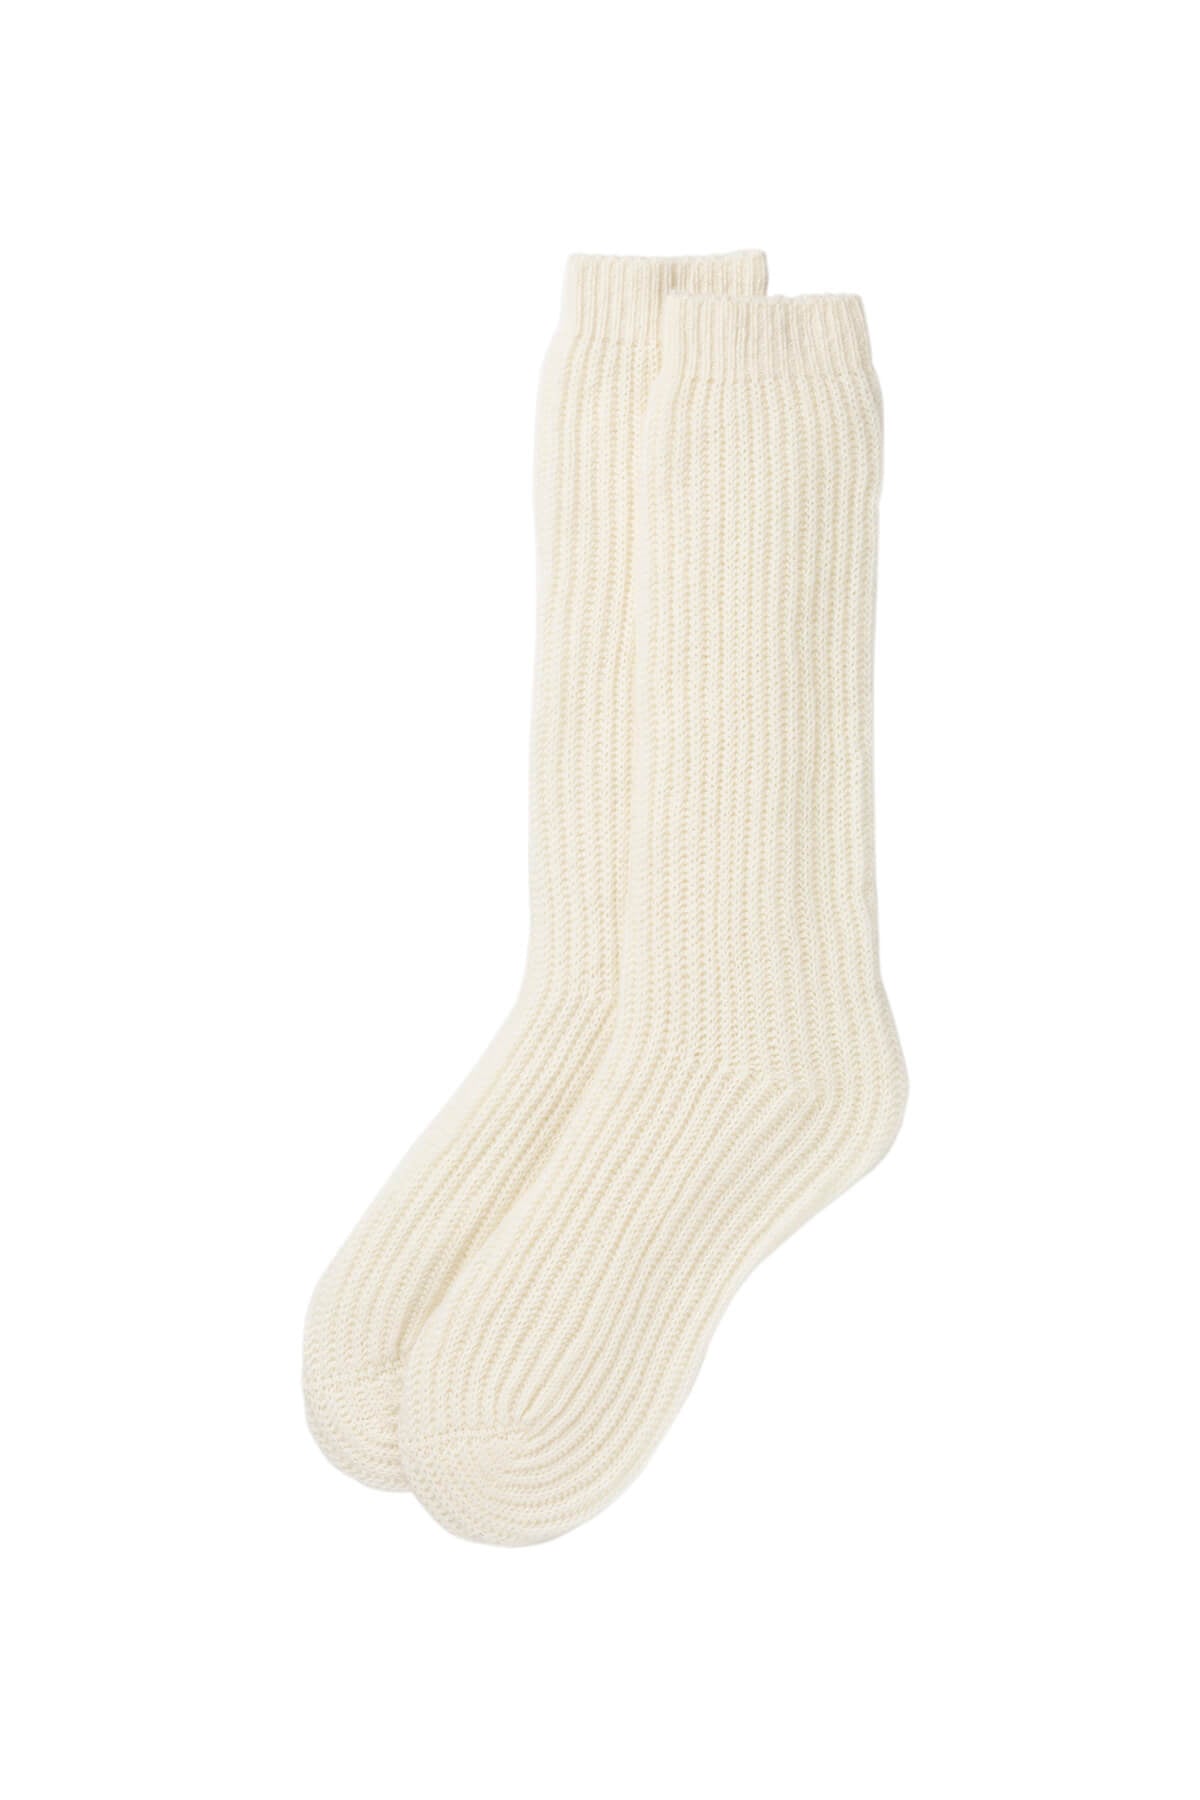 Ribbed Luna White Cashmere Bed Socks – Johnstons of Elgin